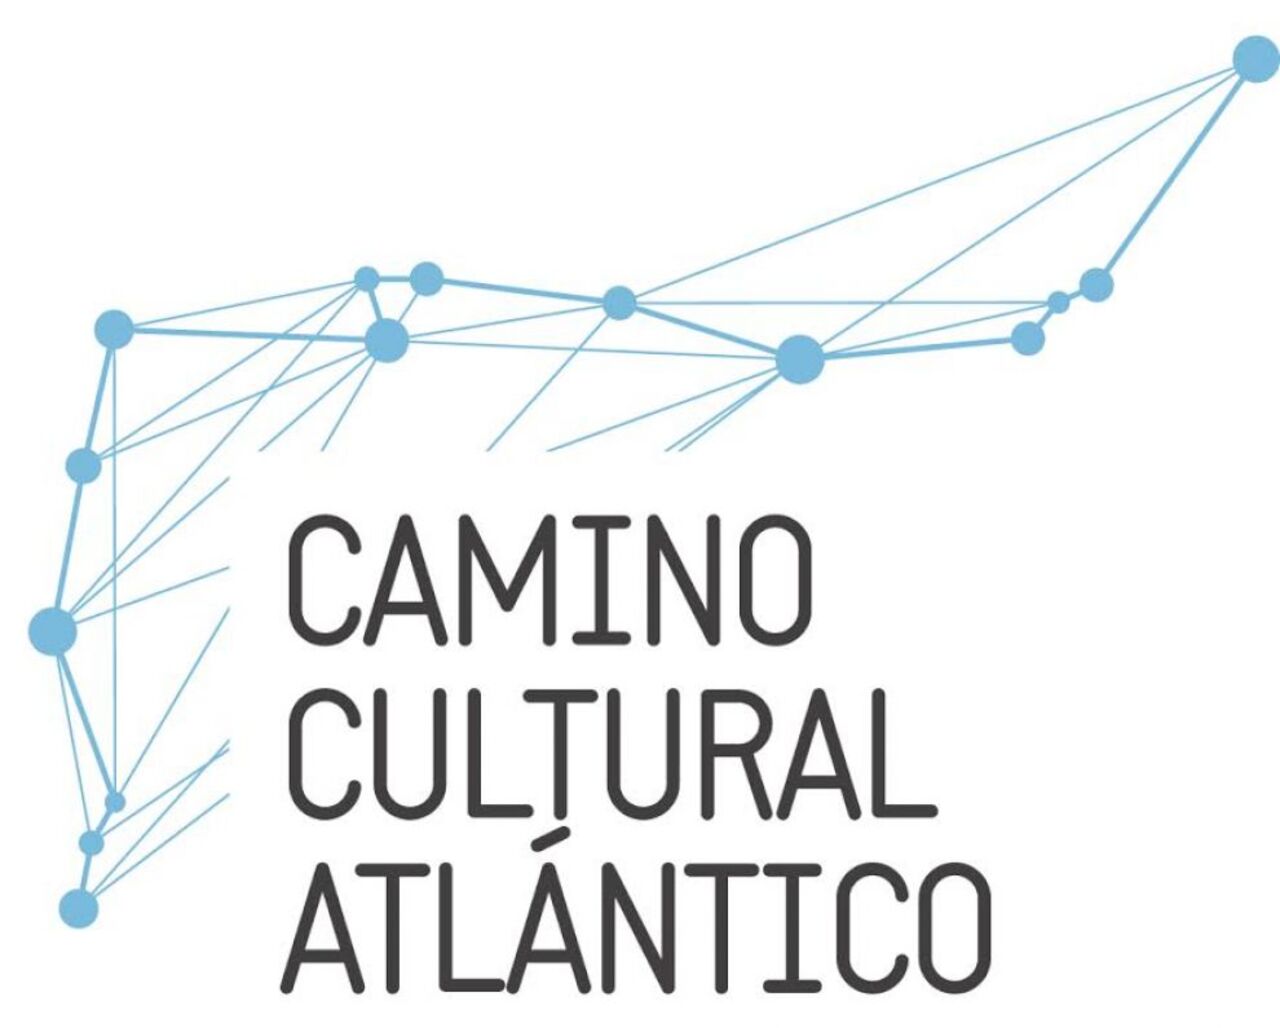 La Comisión del Camino Cultural Atlántico aprueba en Braga la imagen de marca, la estructura de la web y nuevas propuestas